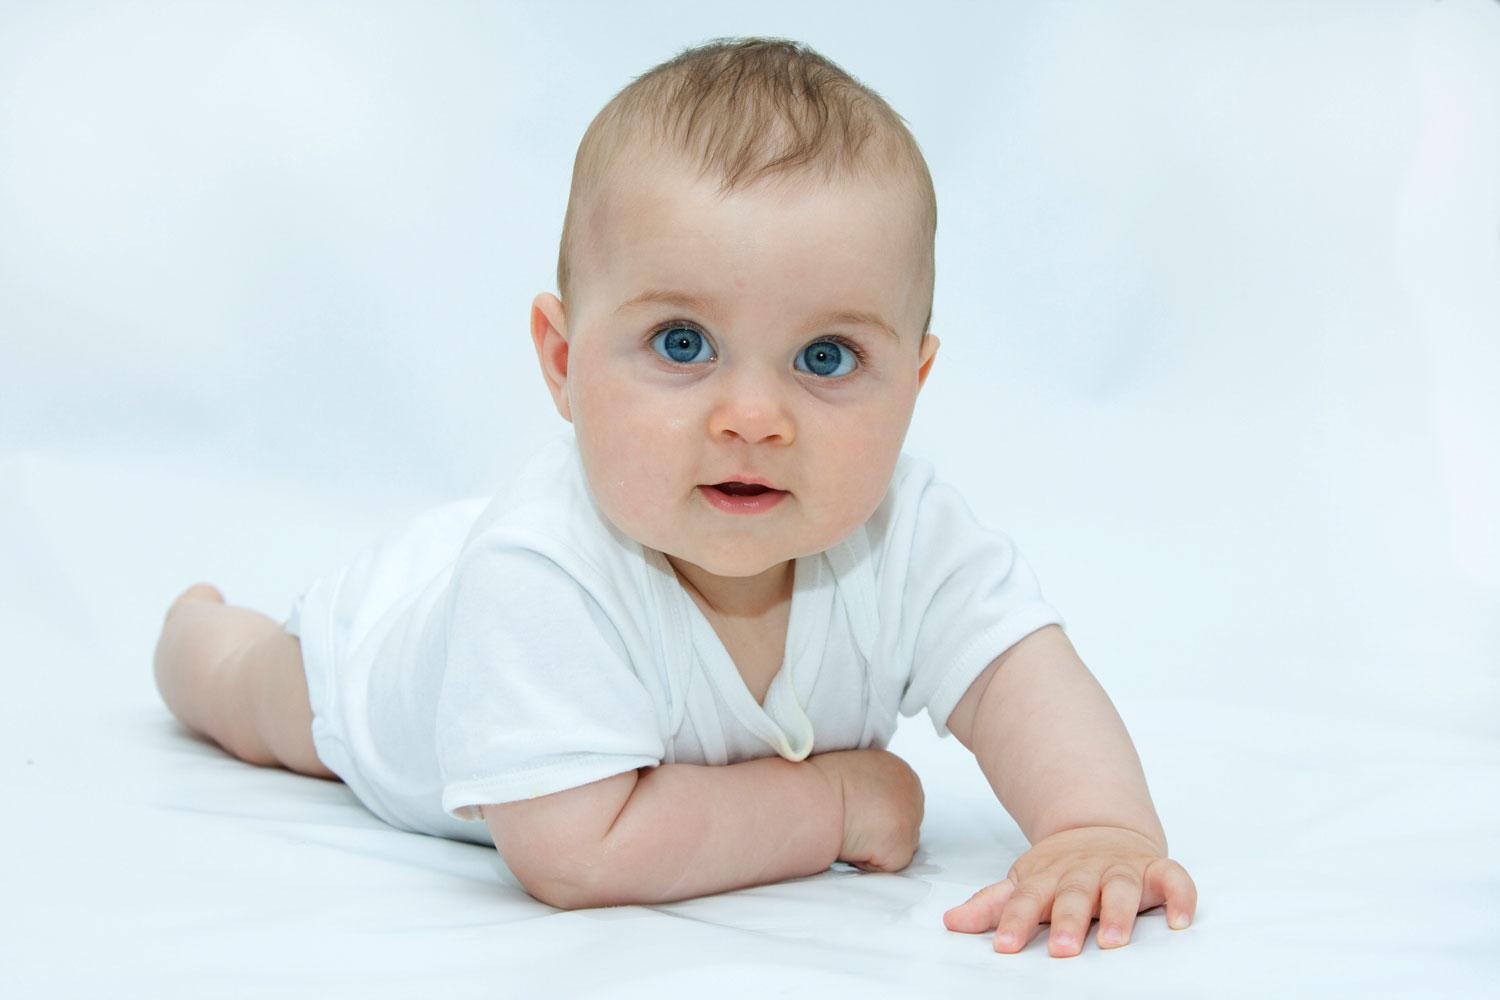 DNK koji vaša beba prima od vas i vašeg partnera određuje hoće li oči biti smeđe, plave, zelene ili druge boje - Avaz